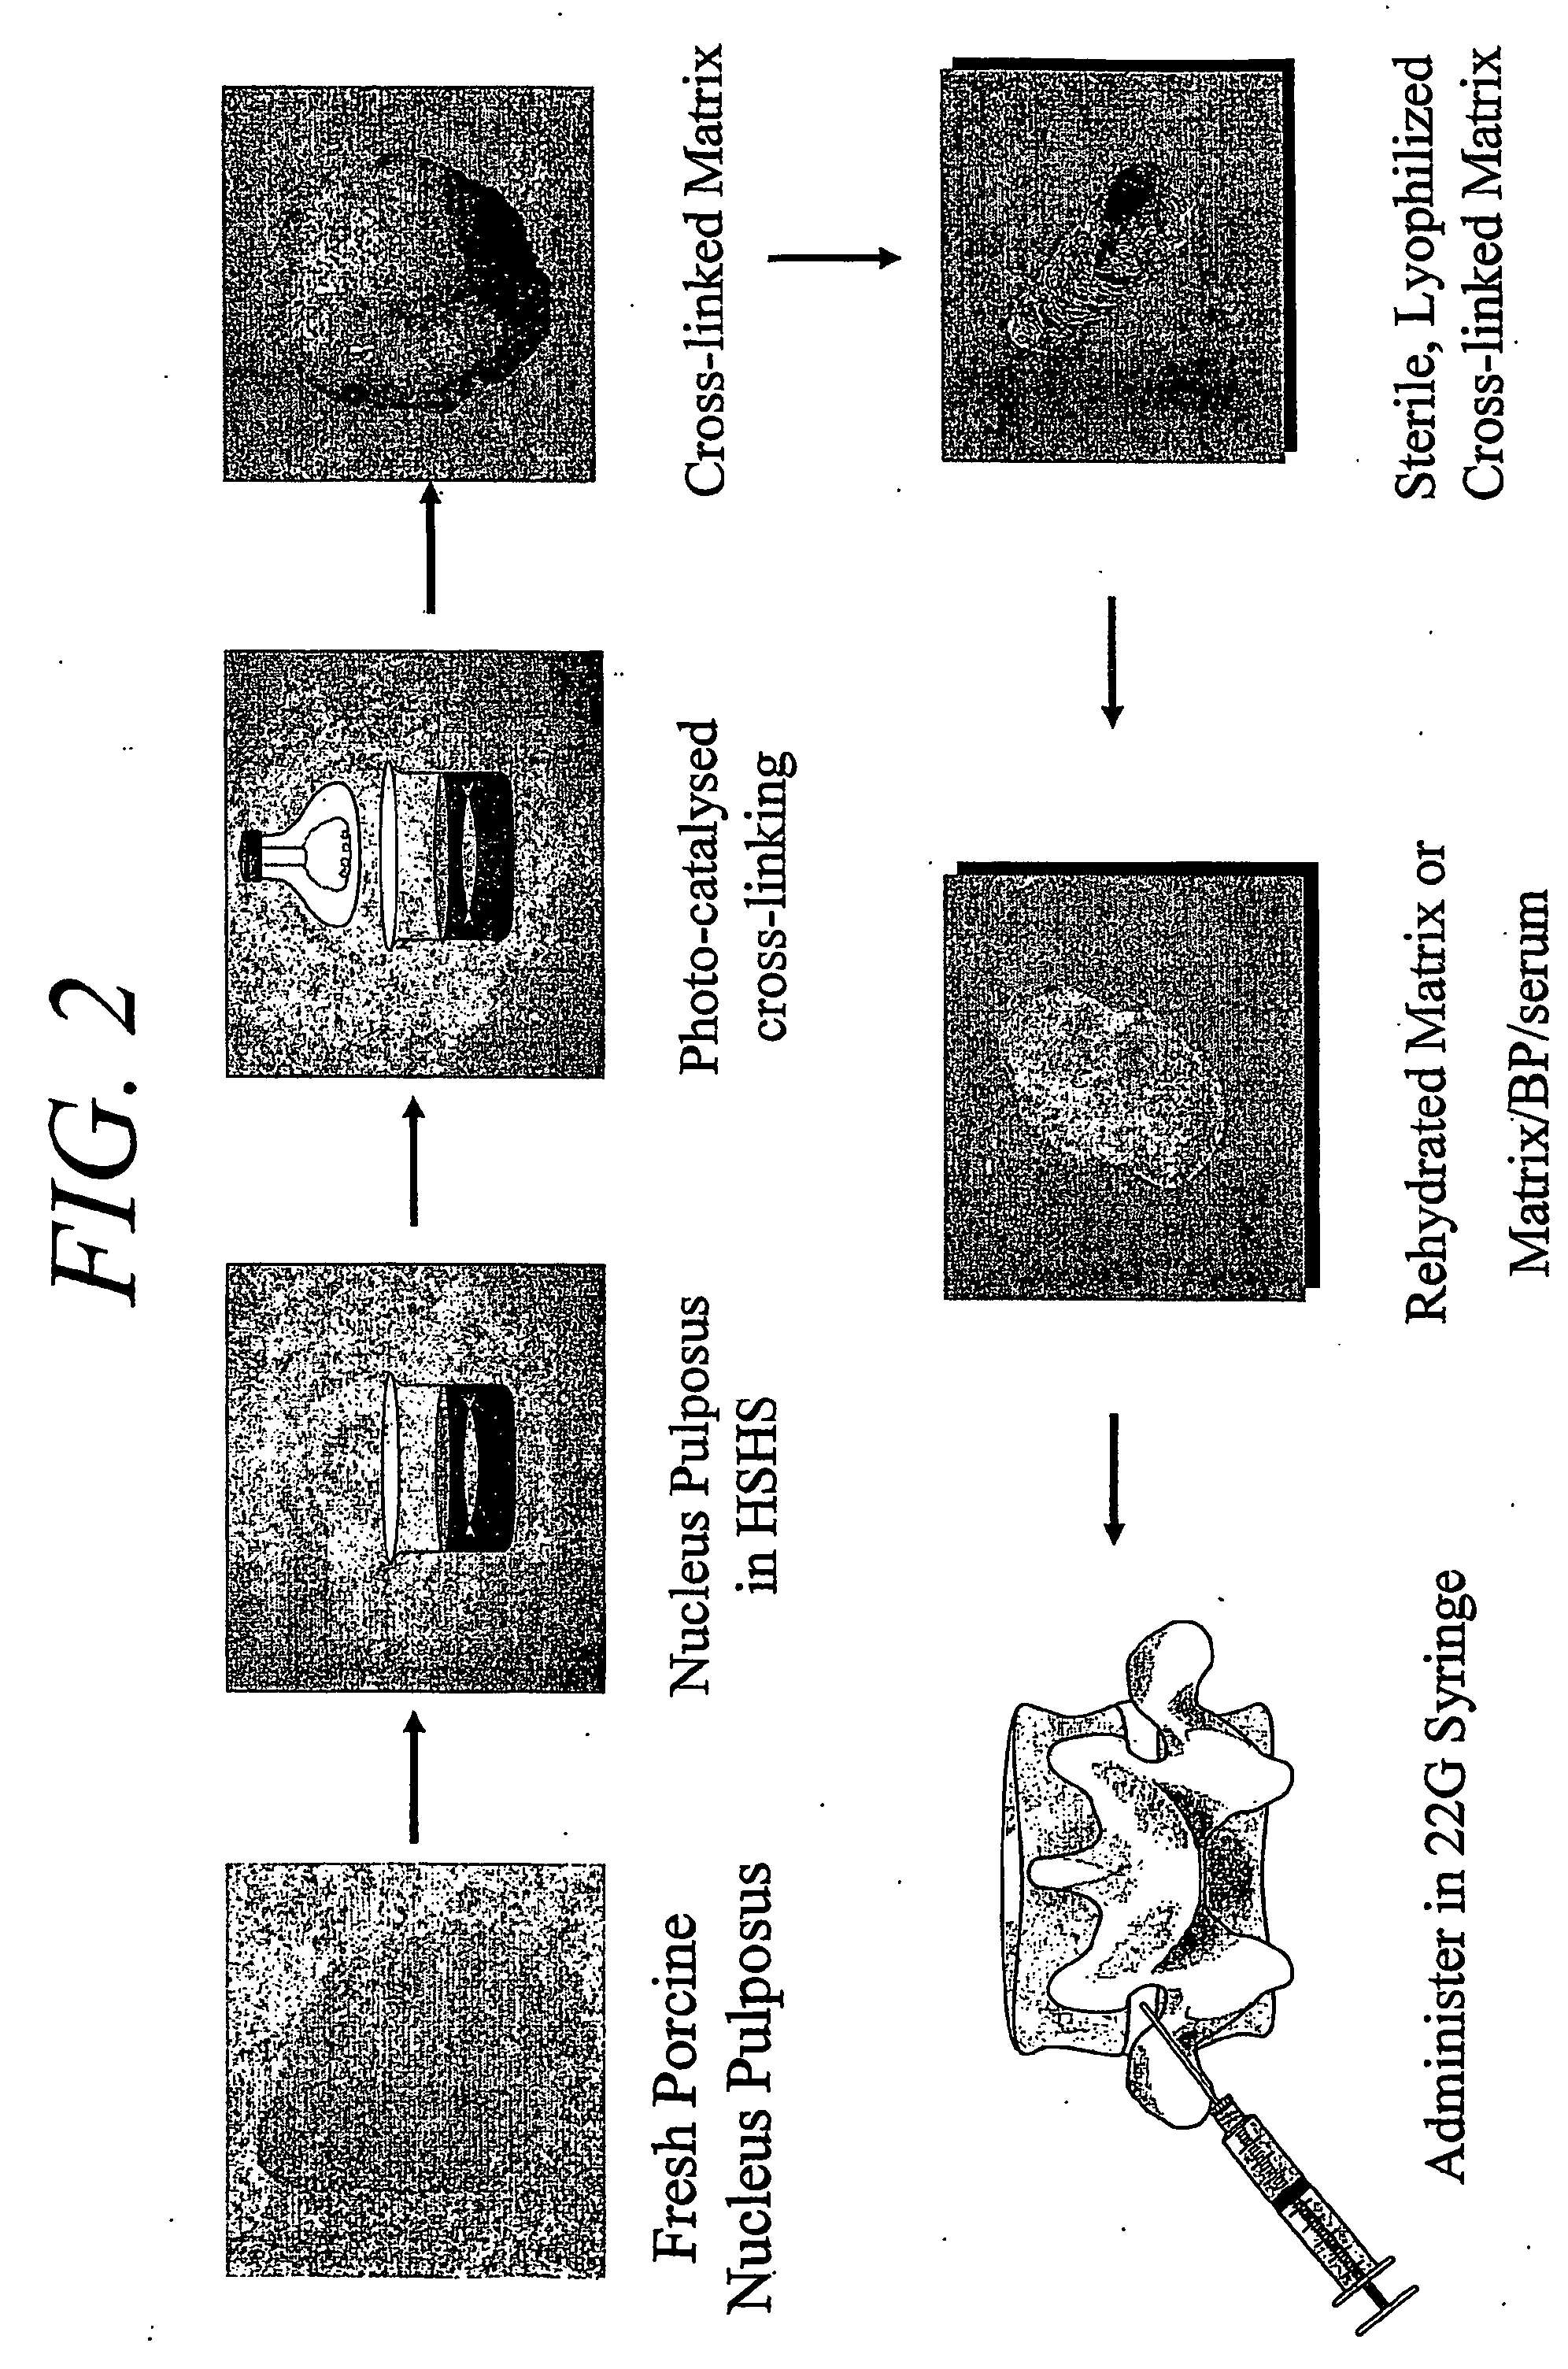 Hydrogel compositions comprising nucleus pulposus tissue